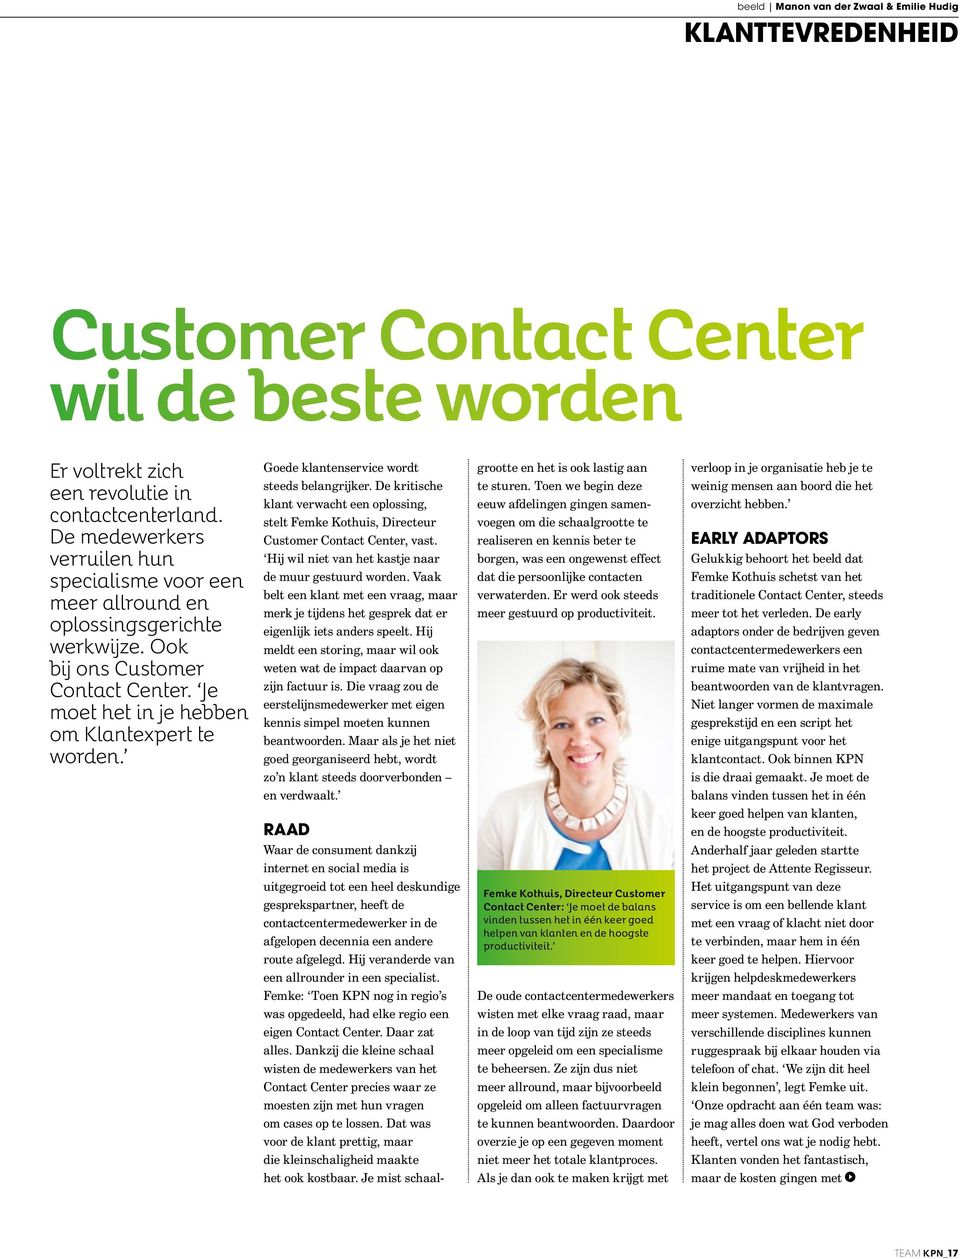 Goede klantenservice wordt steeds belangrijker. De kritische klant verwacht een oplossing, stelt Femke Kothuis, Directeur Customer Contact Center, vast.